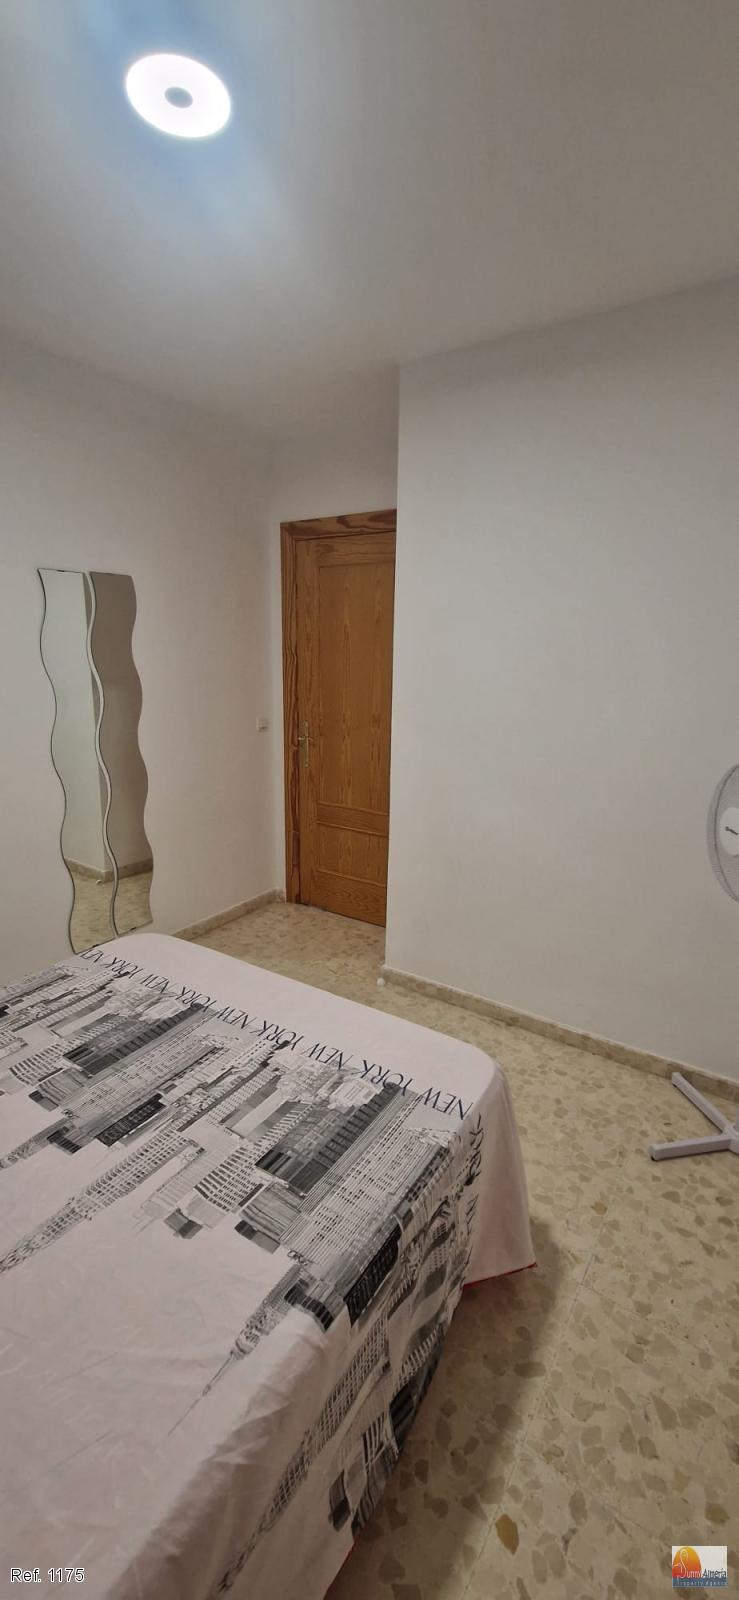 Appartamento in affitto a Avenida  Sabinal 1 (Roquetas de Mar), 650 €/mese